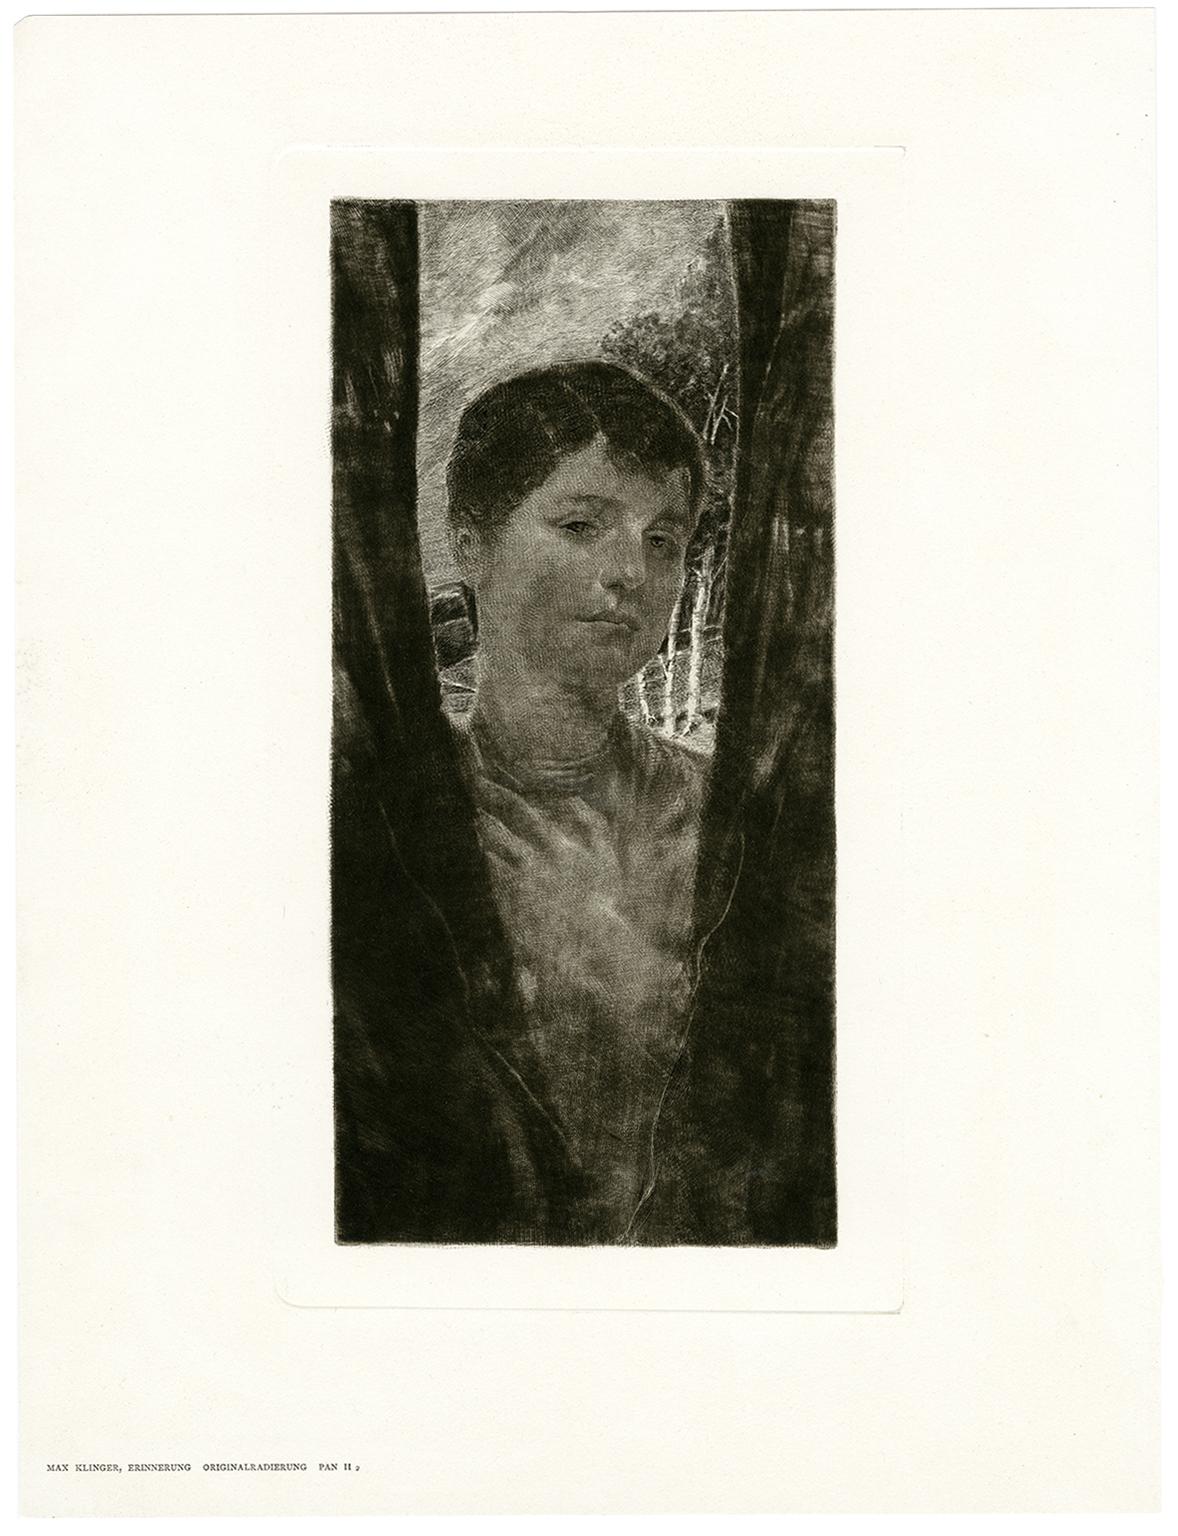 Erinnerung (Rémoration) Gravure romantique du début du siècle - Print de Max Klinger